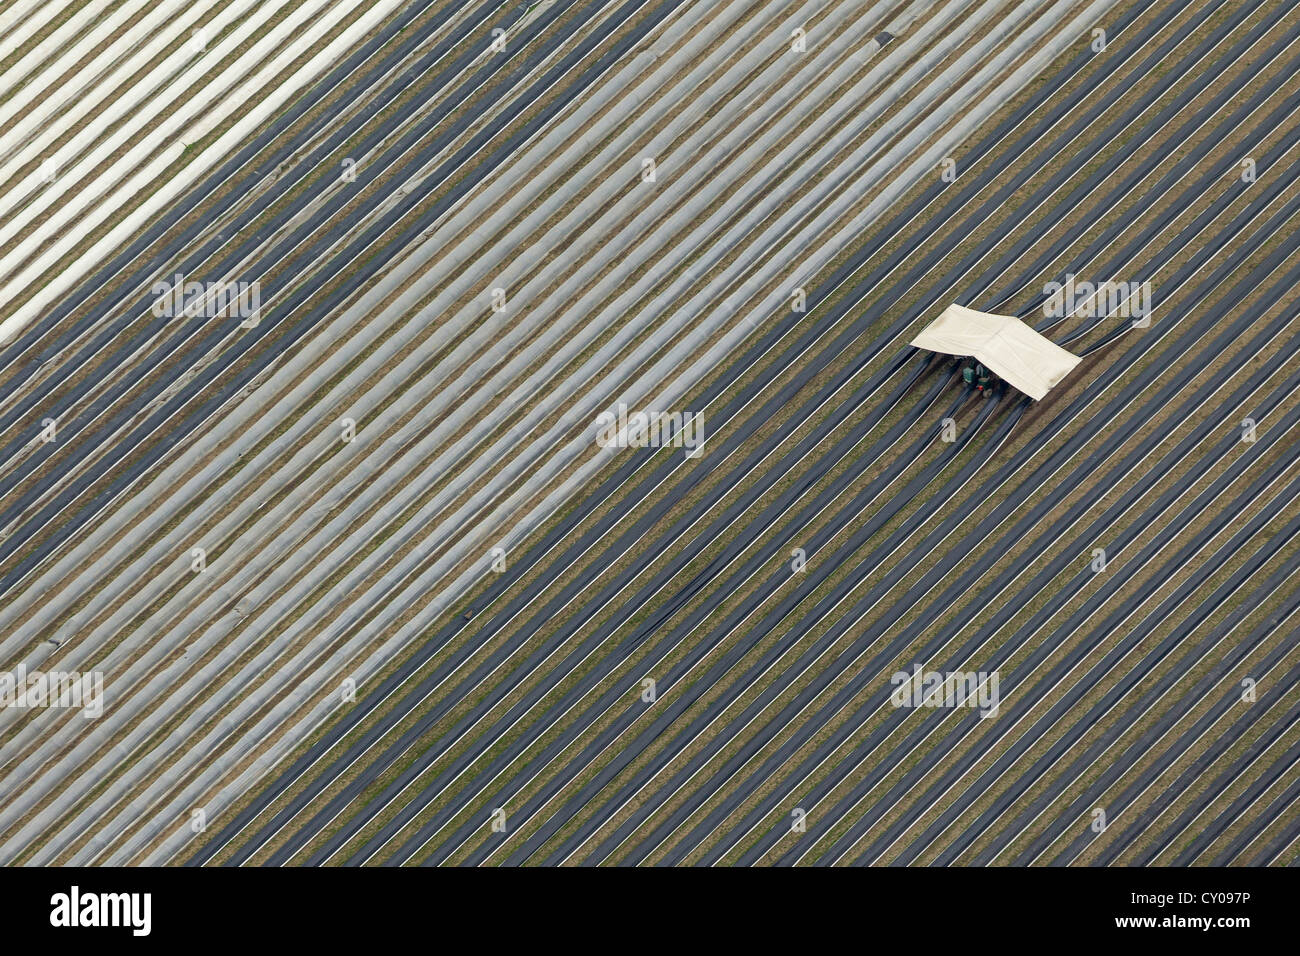 Vue aérienne, la cueillette mécanique d'asperges, asperges champ sur Hafenstrasse street, de Waltrop Ruhr Banque D'Images